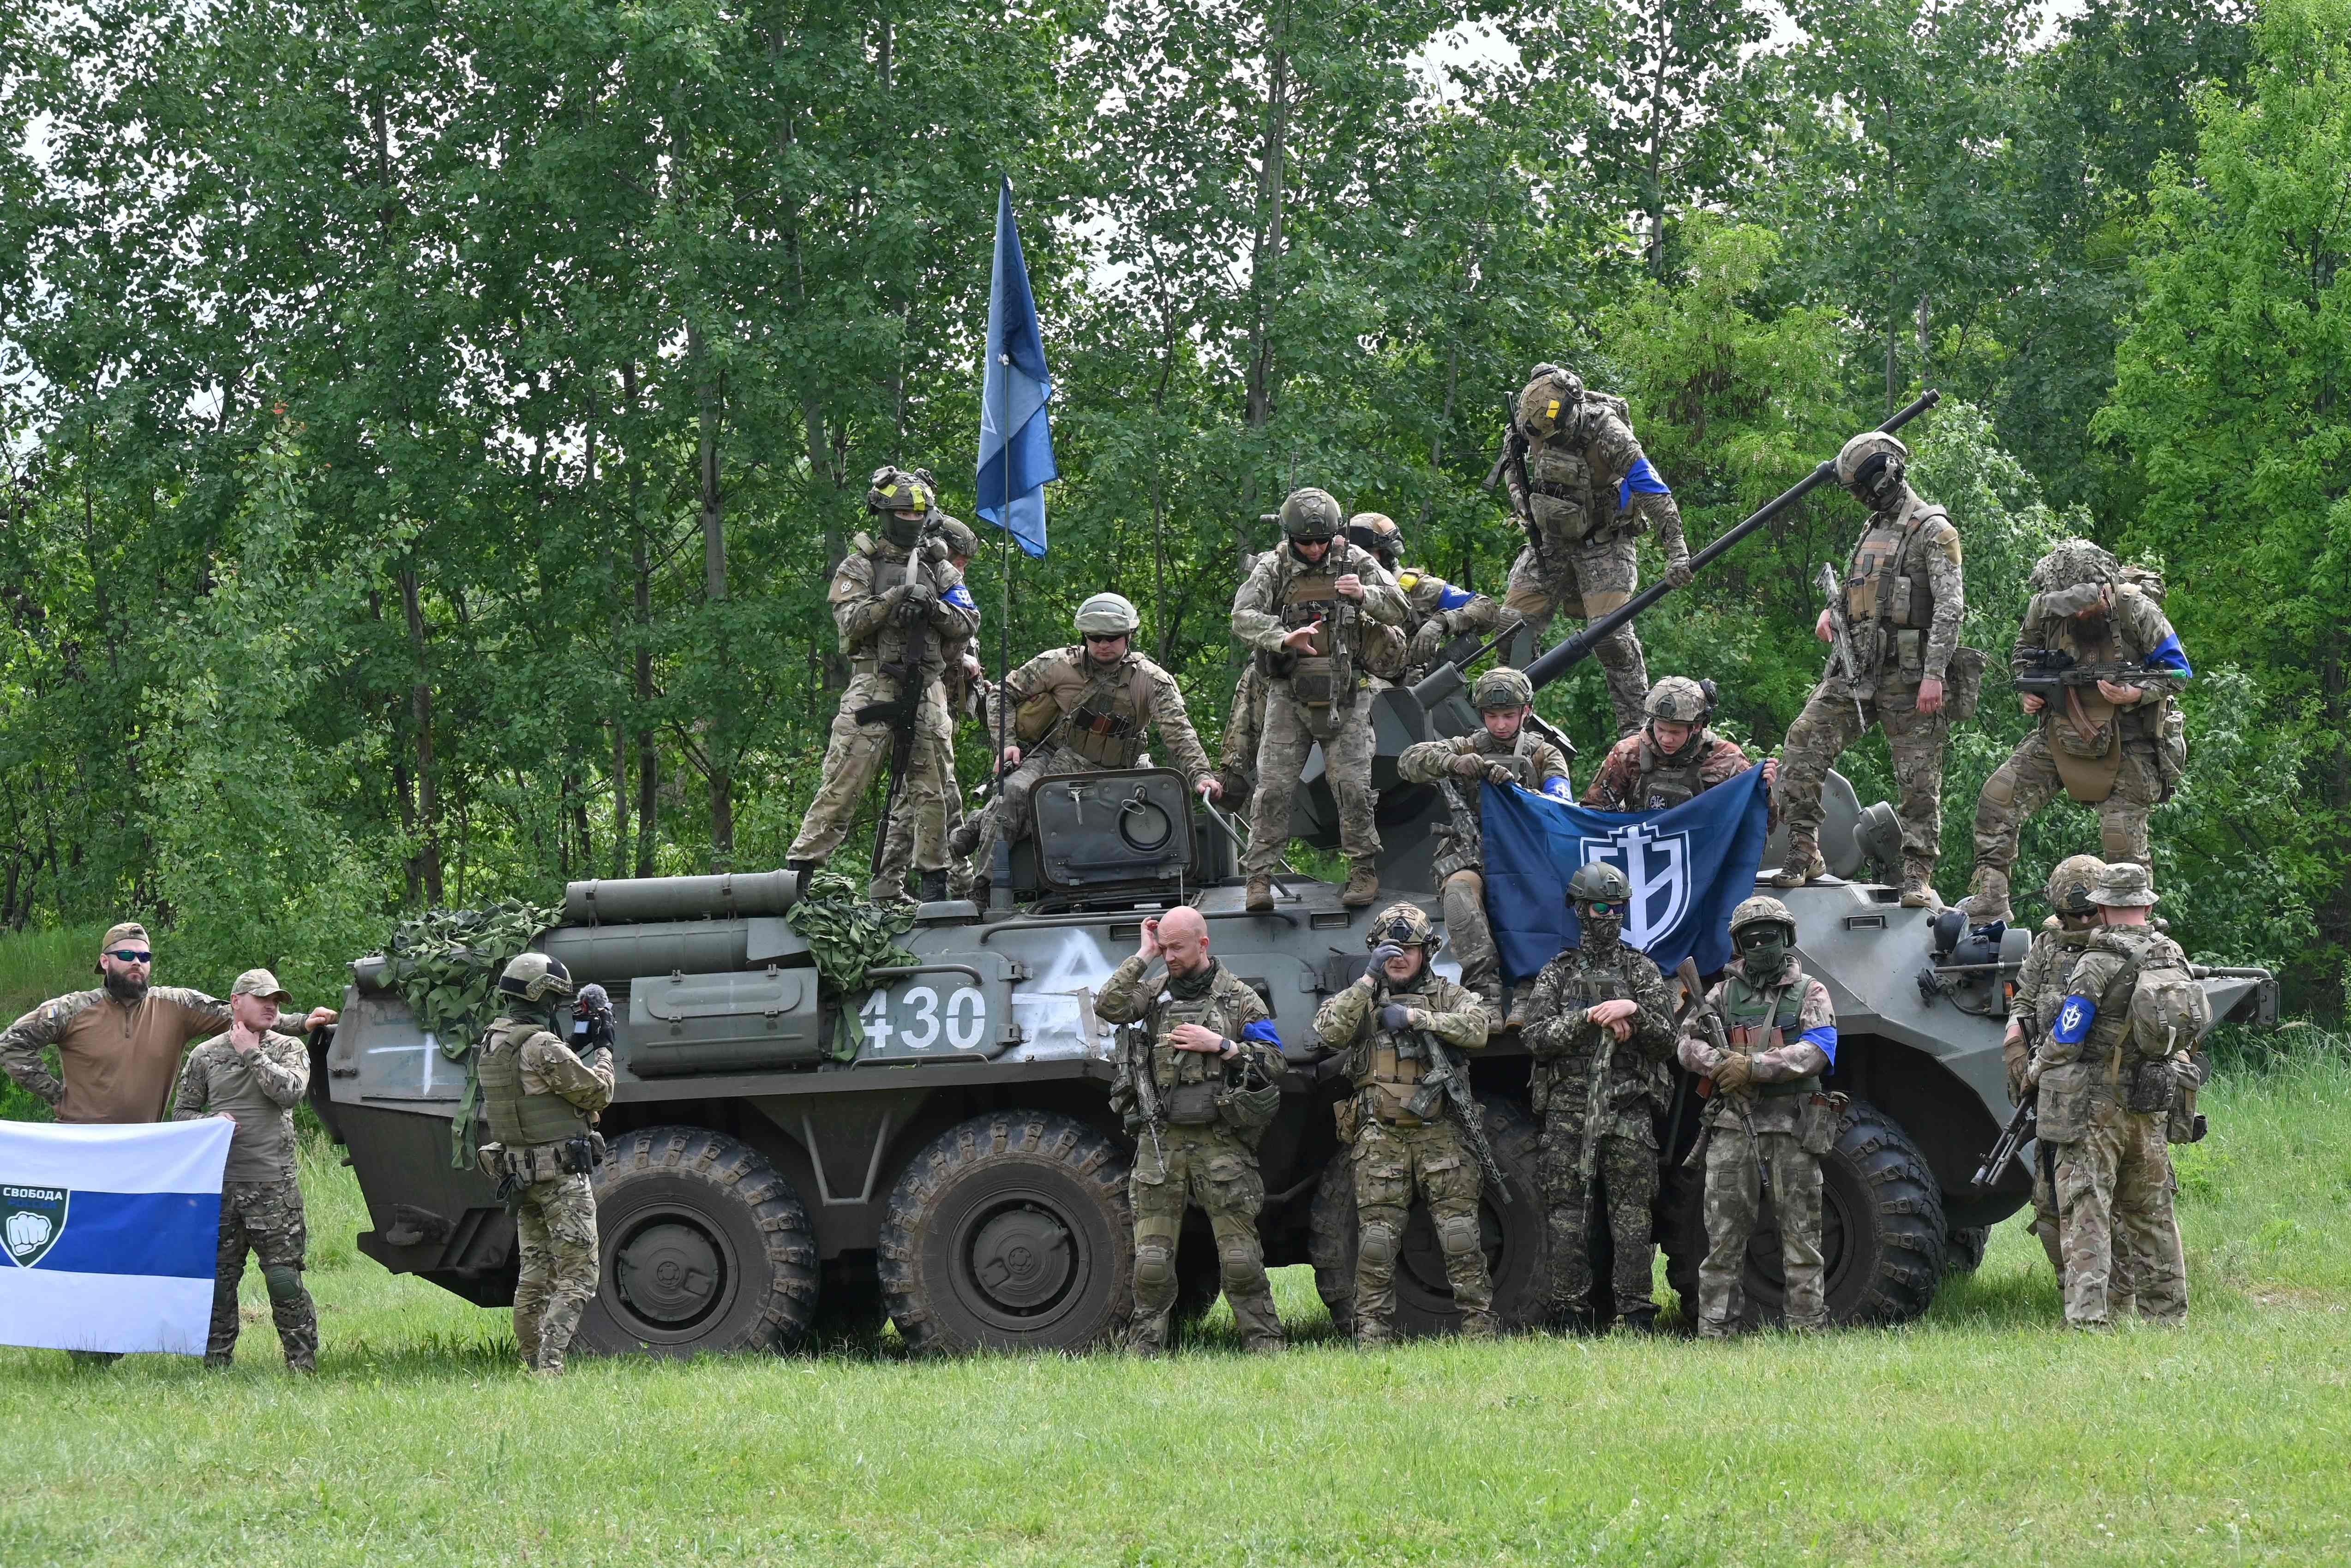 Russische Streitkräfte machen an der ukrainischen Front aktiv Jagd auf Caesar und seine Krieger